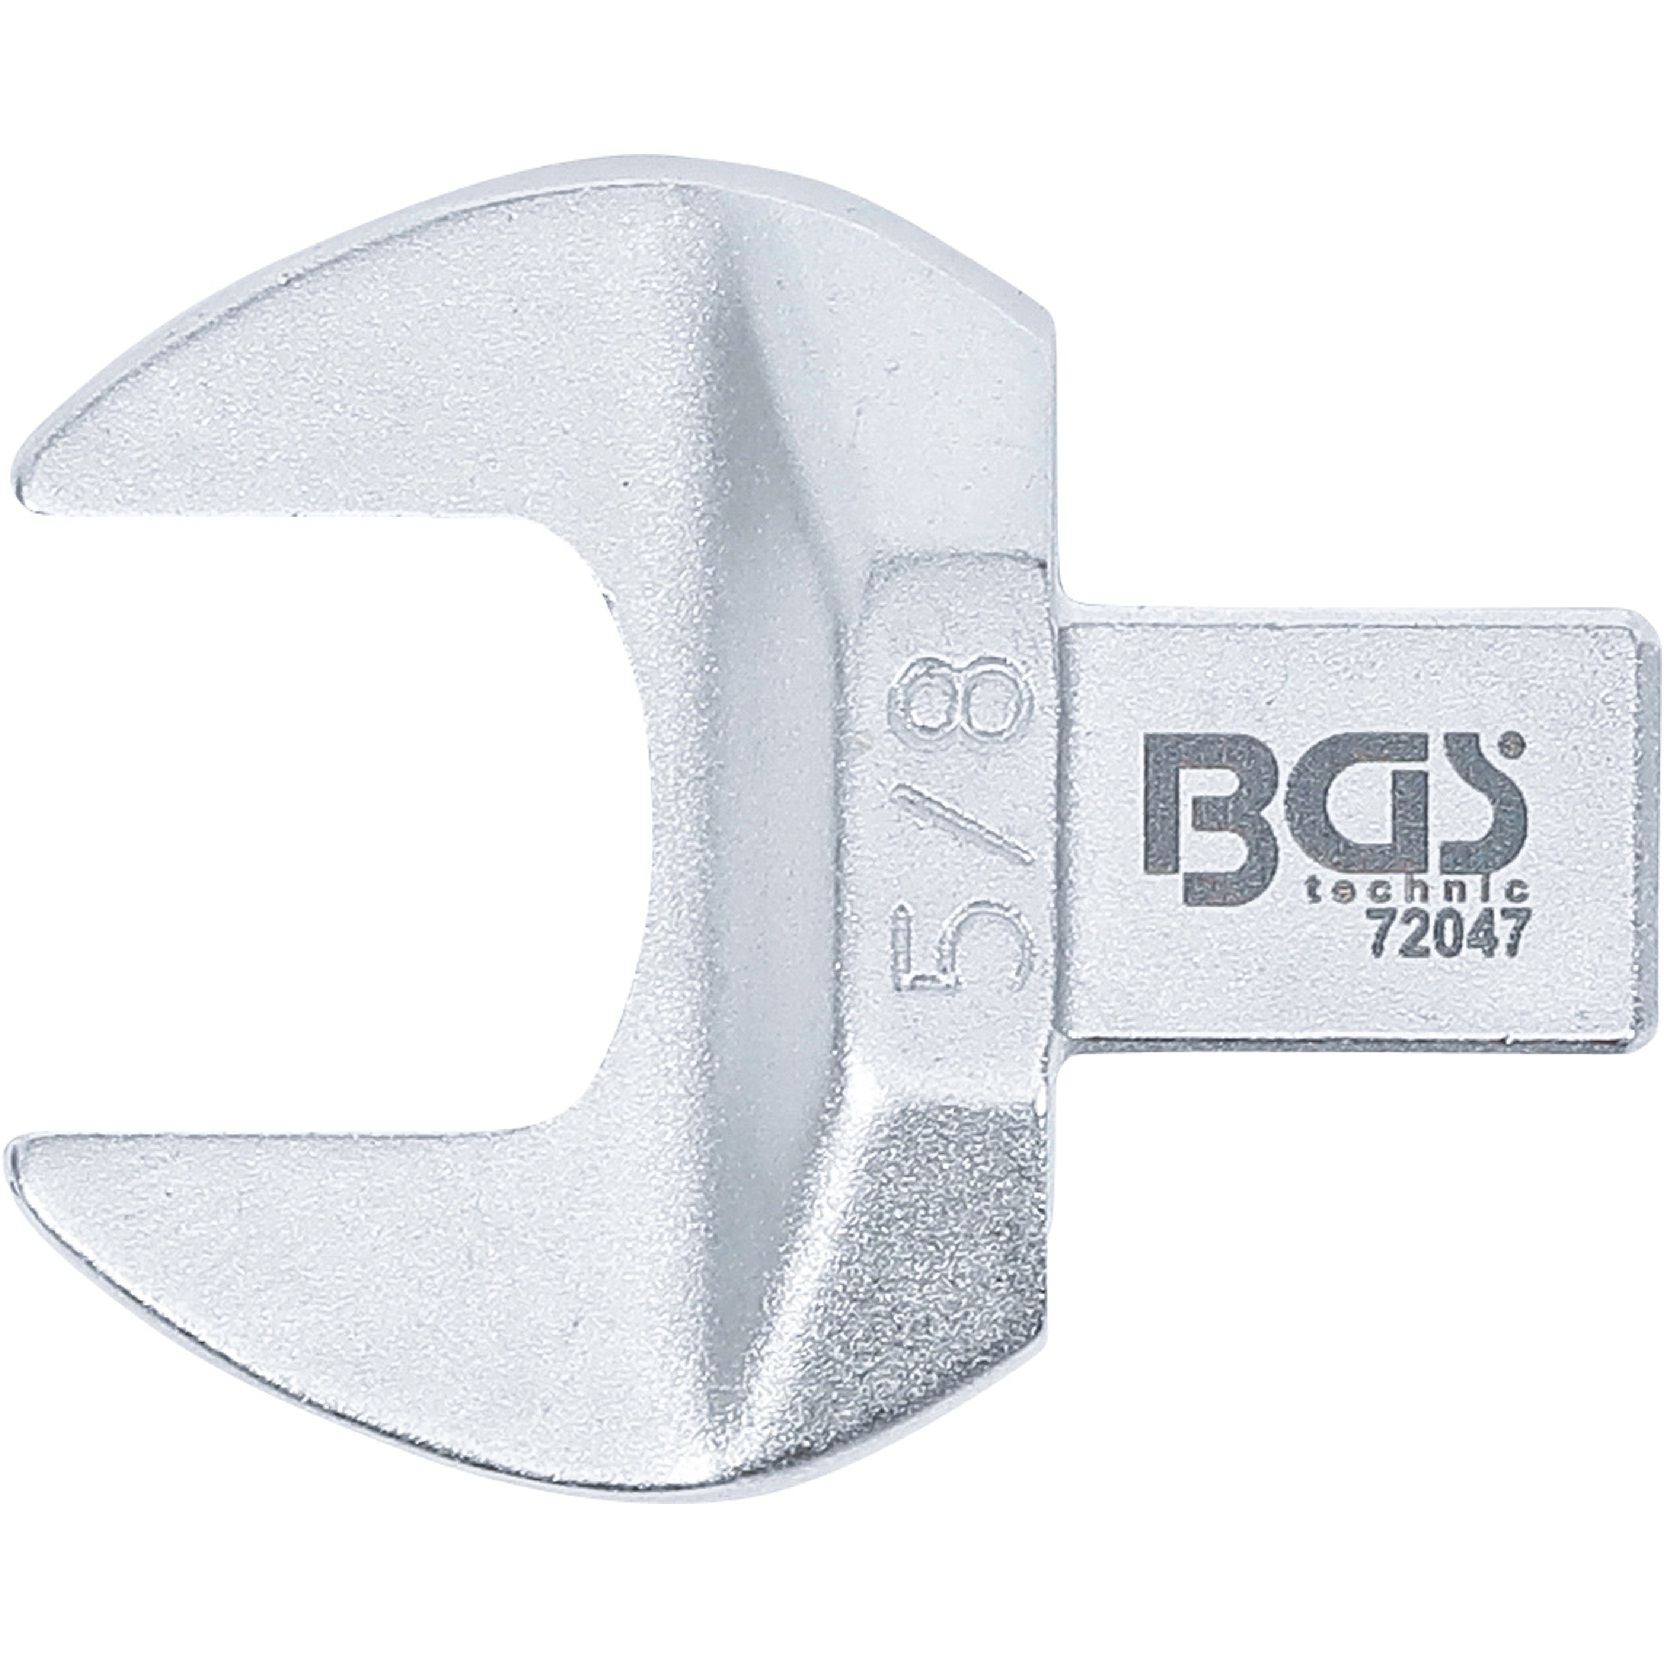 Kľúč nástrčný plochý vidlicový, palcový 5/8", 4-hran 9 x 12 mm, BGS 72047